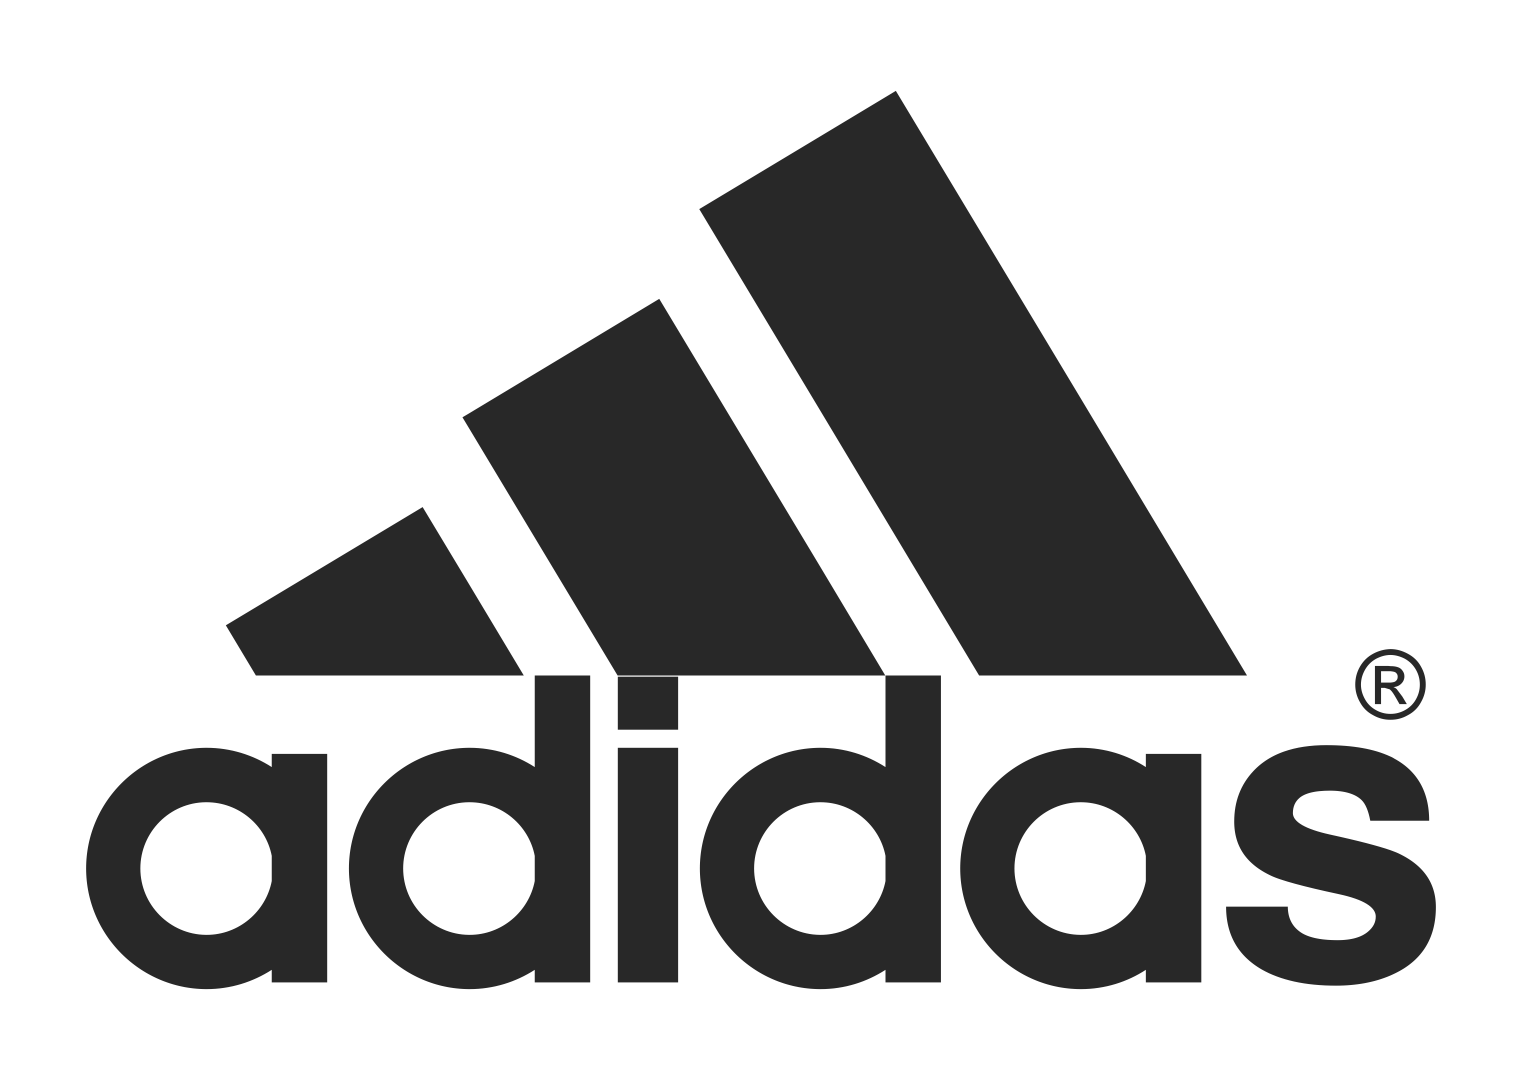 adidas-logo-vector